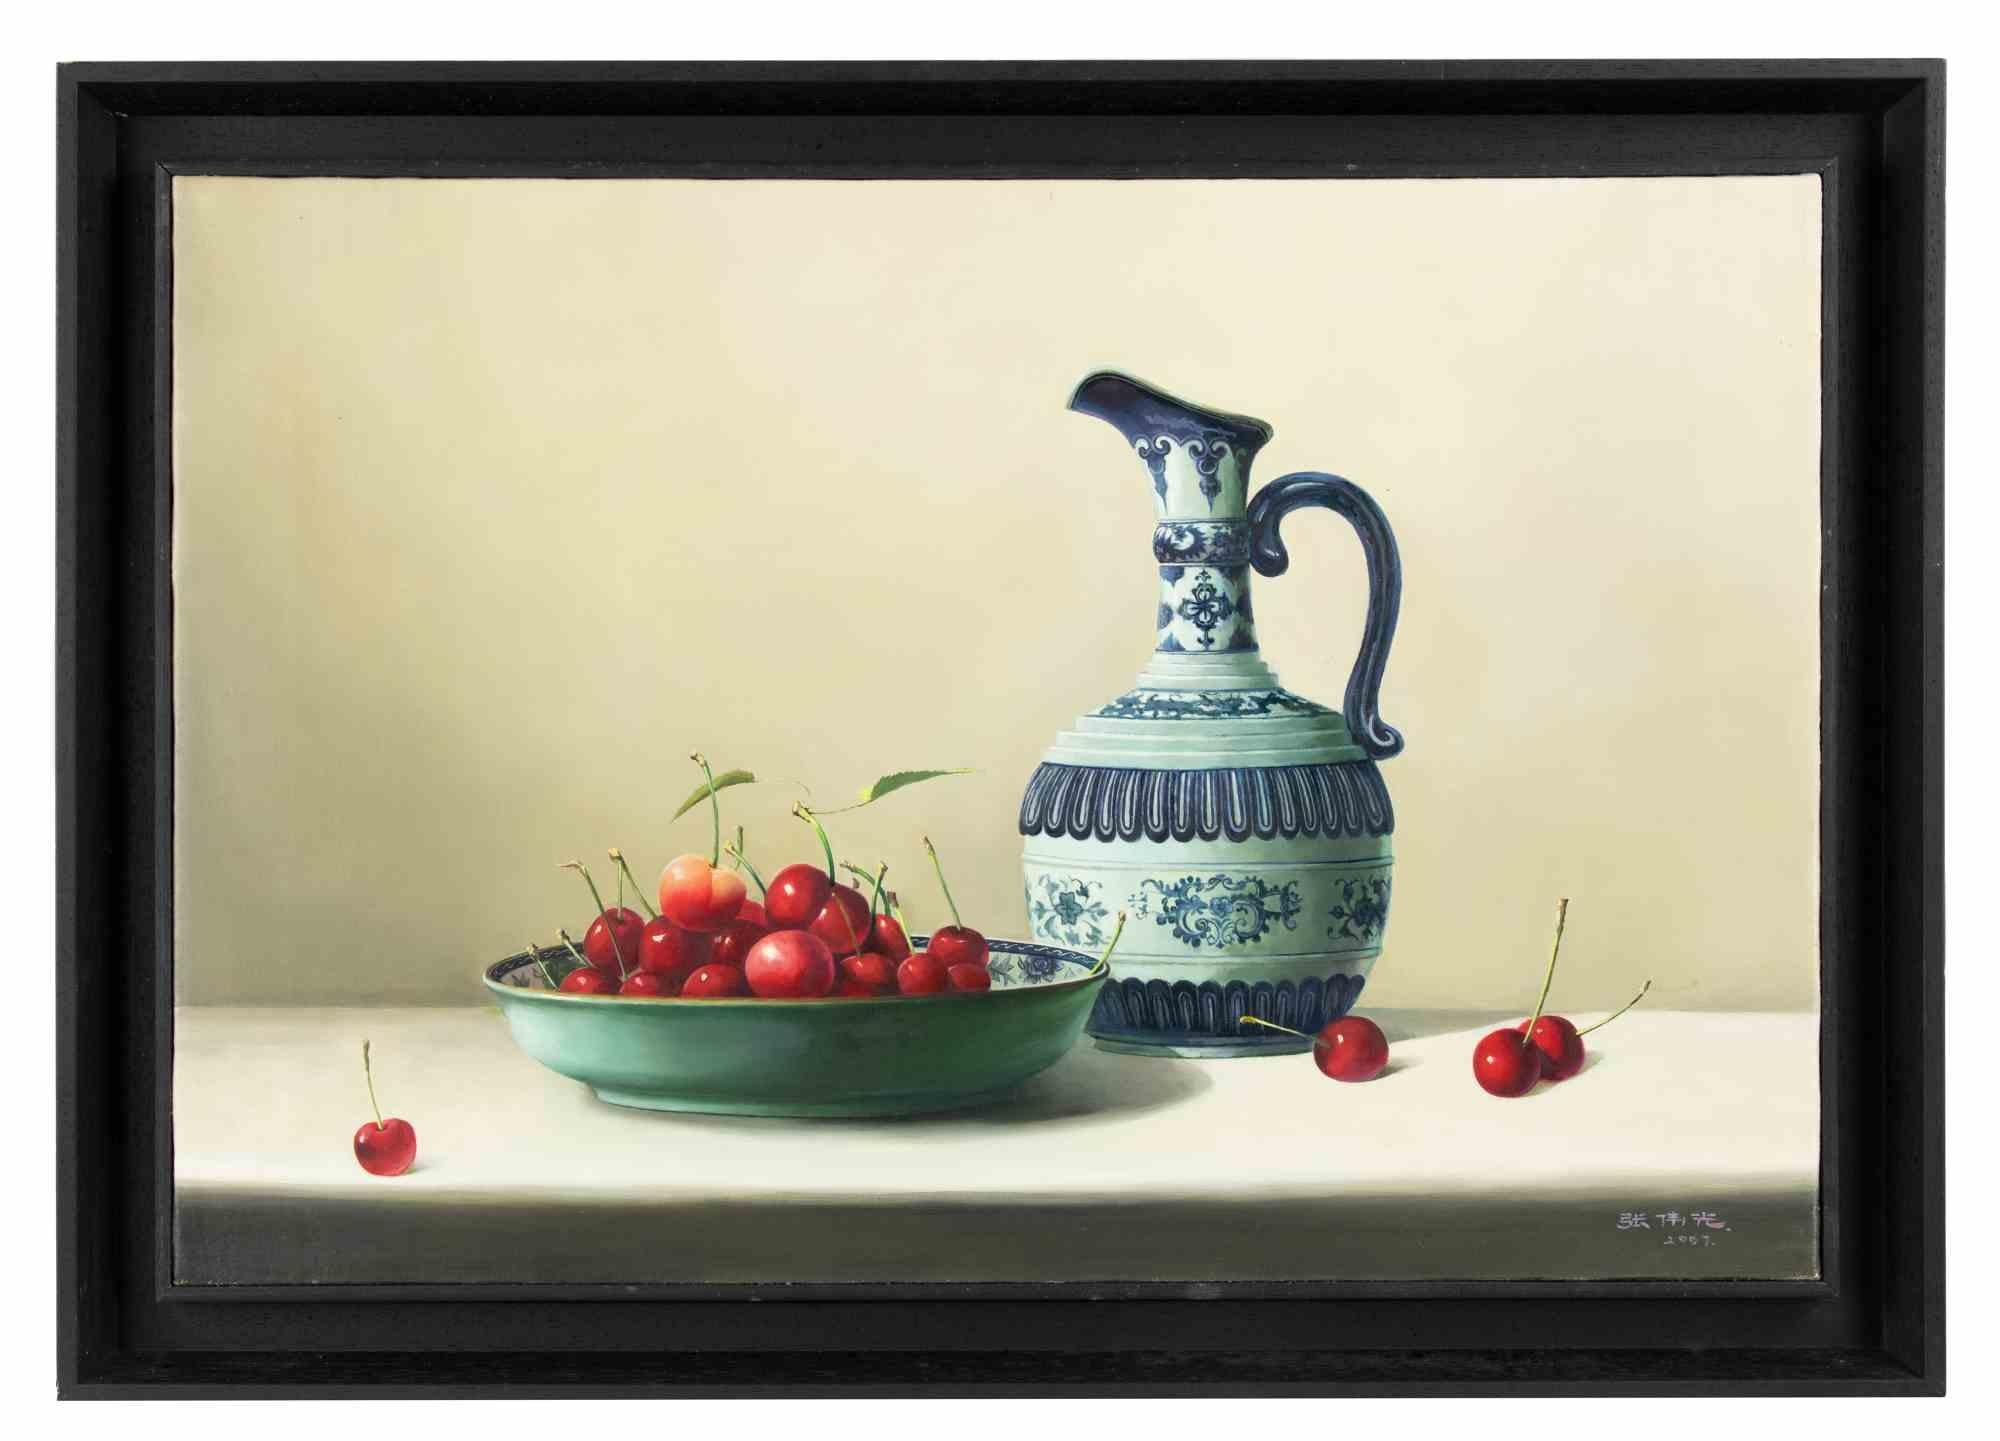 Kirschen auf dem Tisch  ist ein realisiertes Ölgemälde  von Zhang Wei Guang (Mirror) im Jahr 2007.

Einschließlich Rahmen.

Handsigniert und datiert am unteren Rand

Sehr guter Zustand.

Zhang Wei Guang , auch "Spiegel" genannt, wurde 1968 in Helong